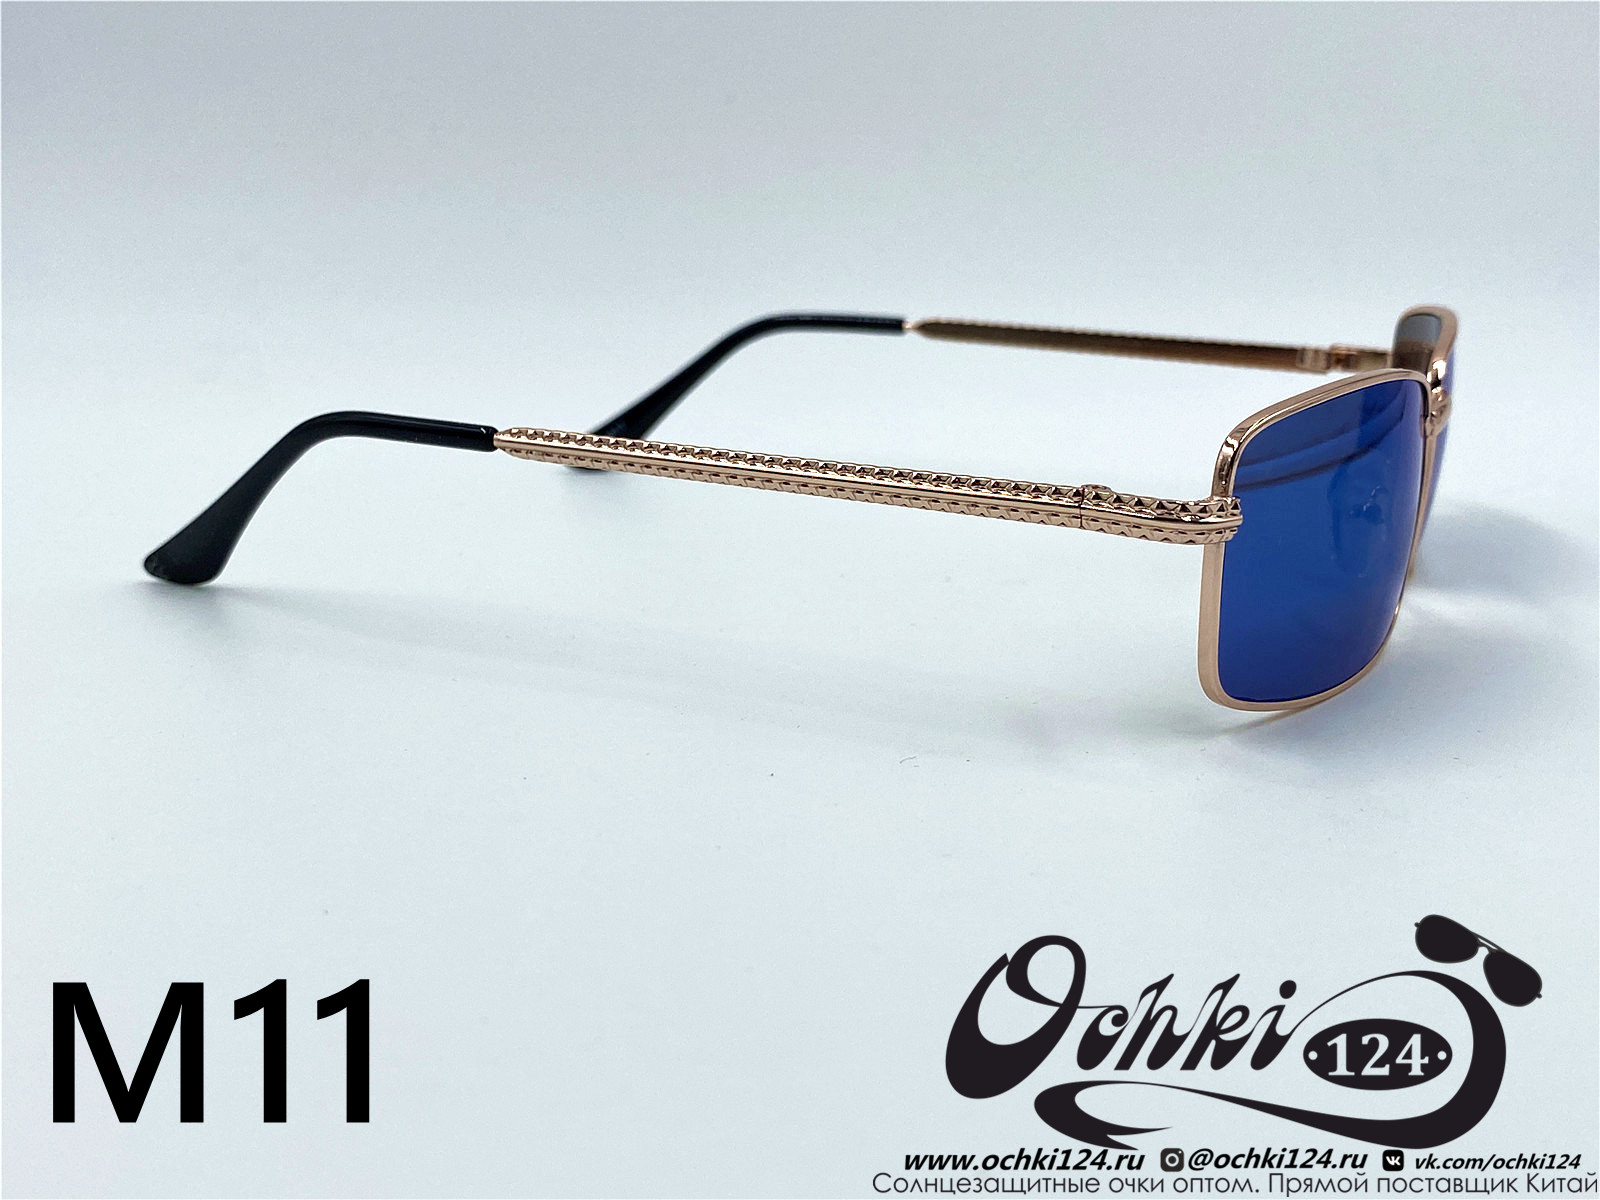  Солнцезащитные очки картинка 2022 Мужские Узкие и длинные KaiFeng M11-7 